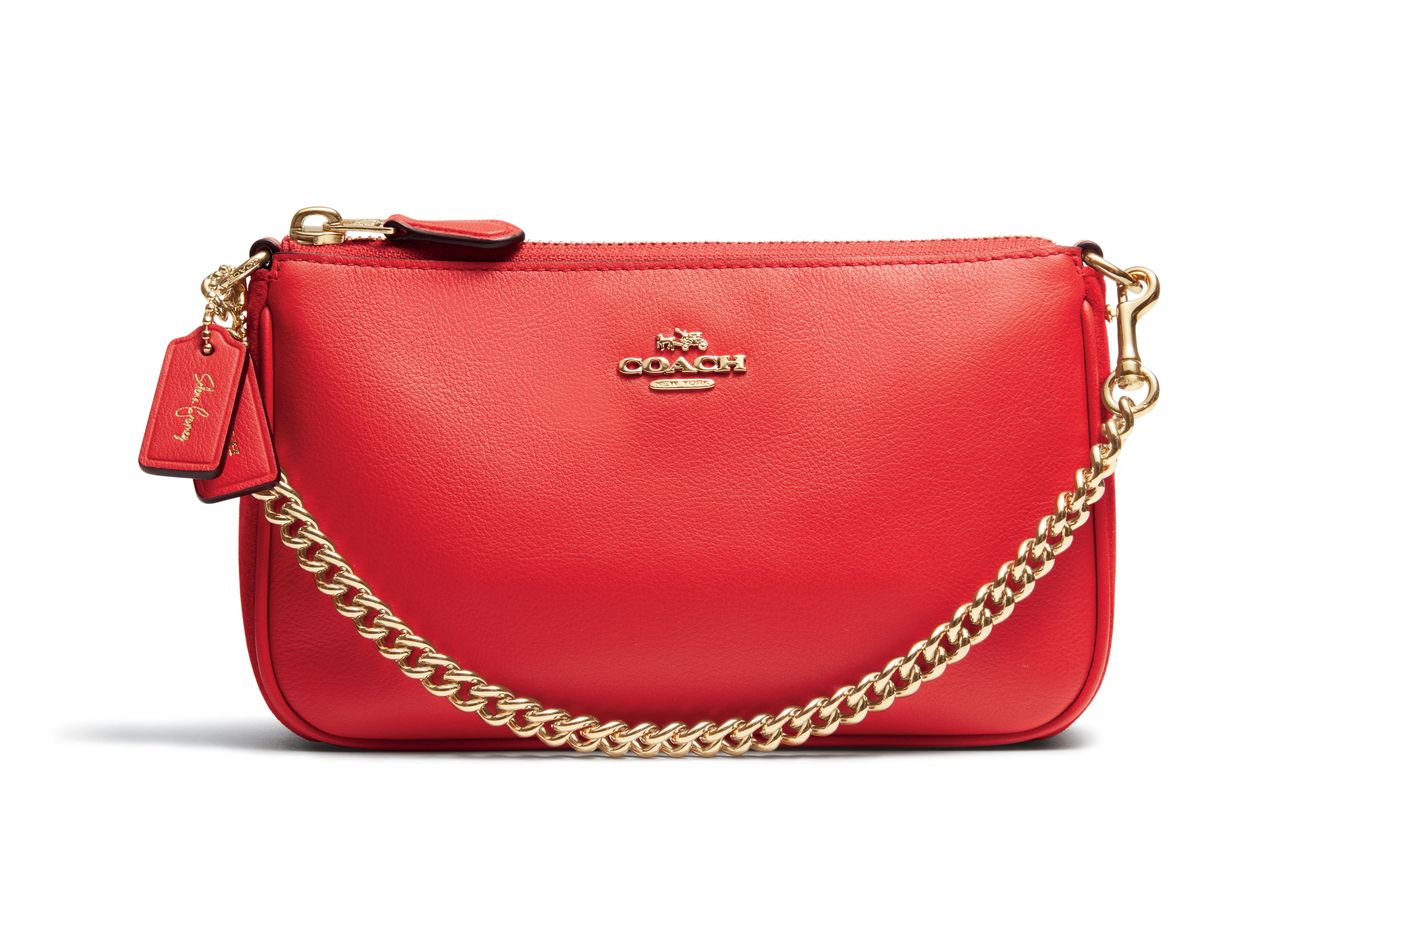 COACH Launches Coach x Selena Gomez Handbag Collection